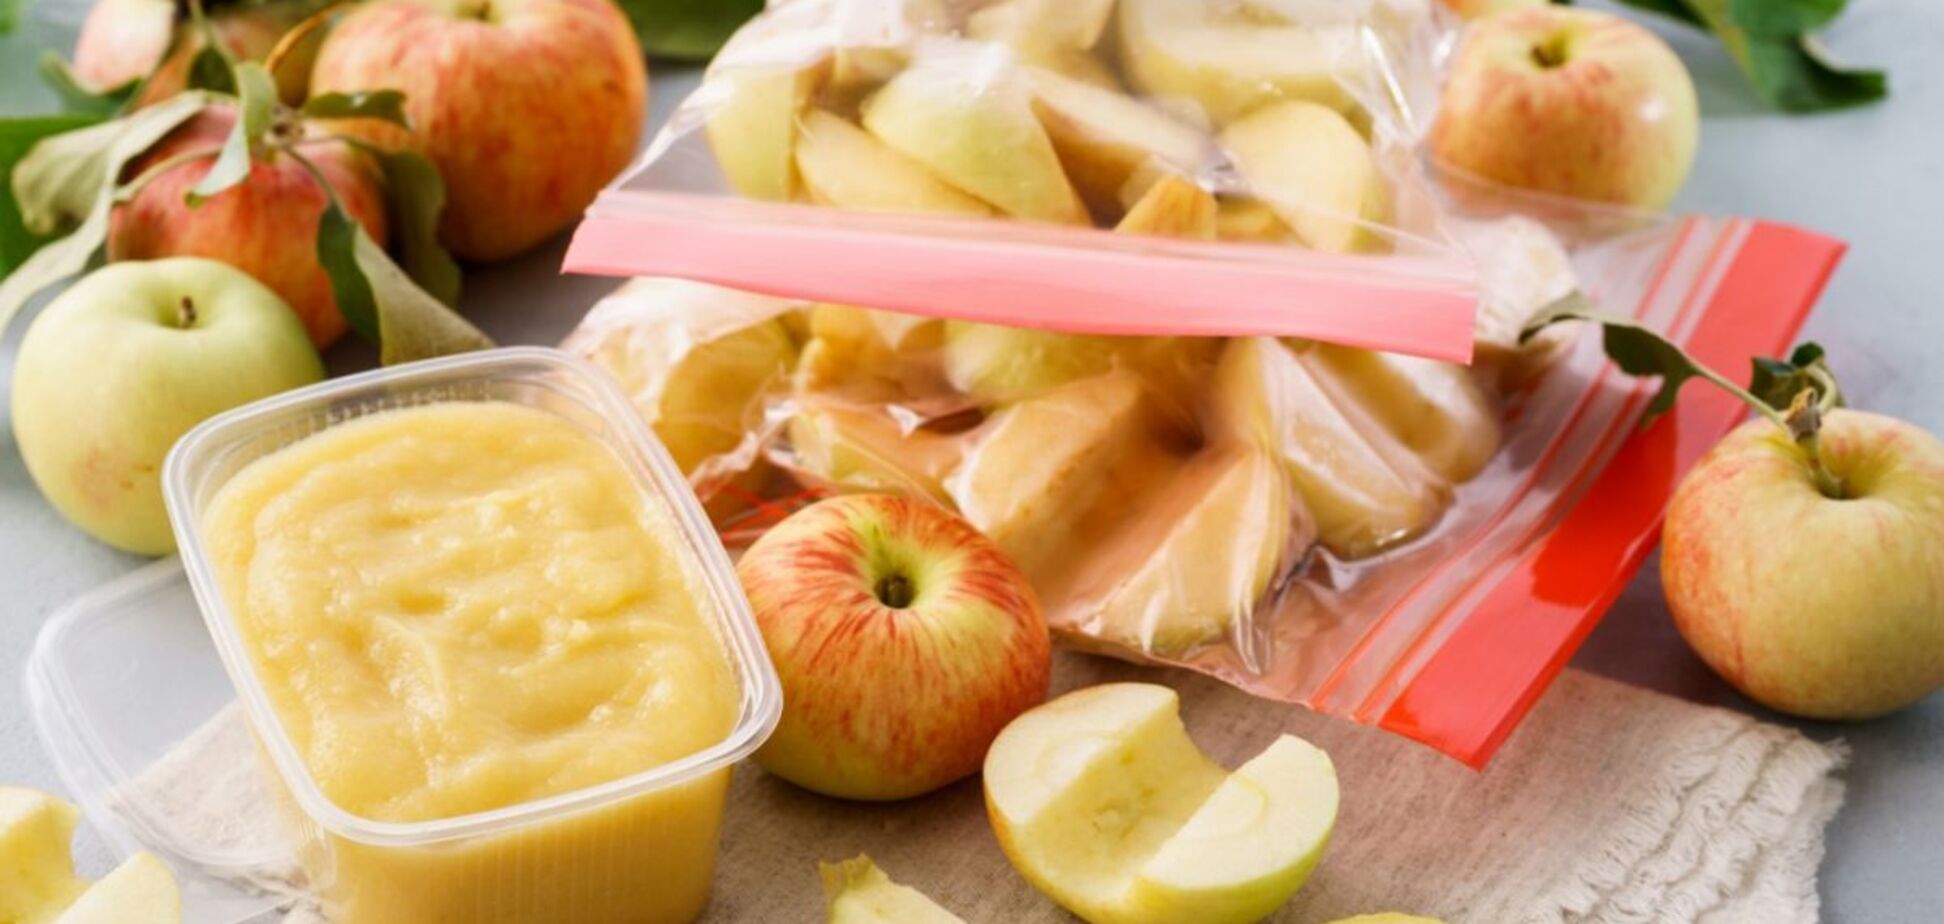 Як правильно заморозити яблука, щоб вони не почорніли: найкращий спосіб